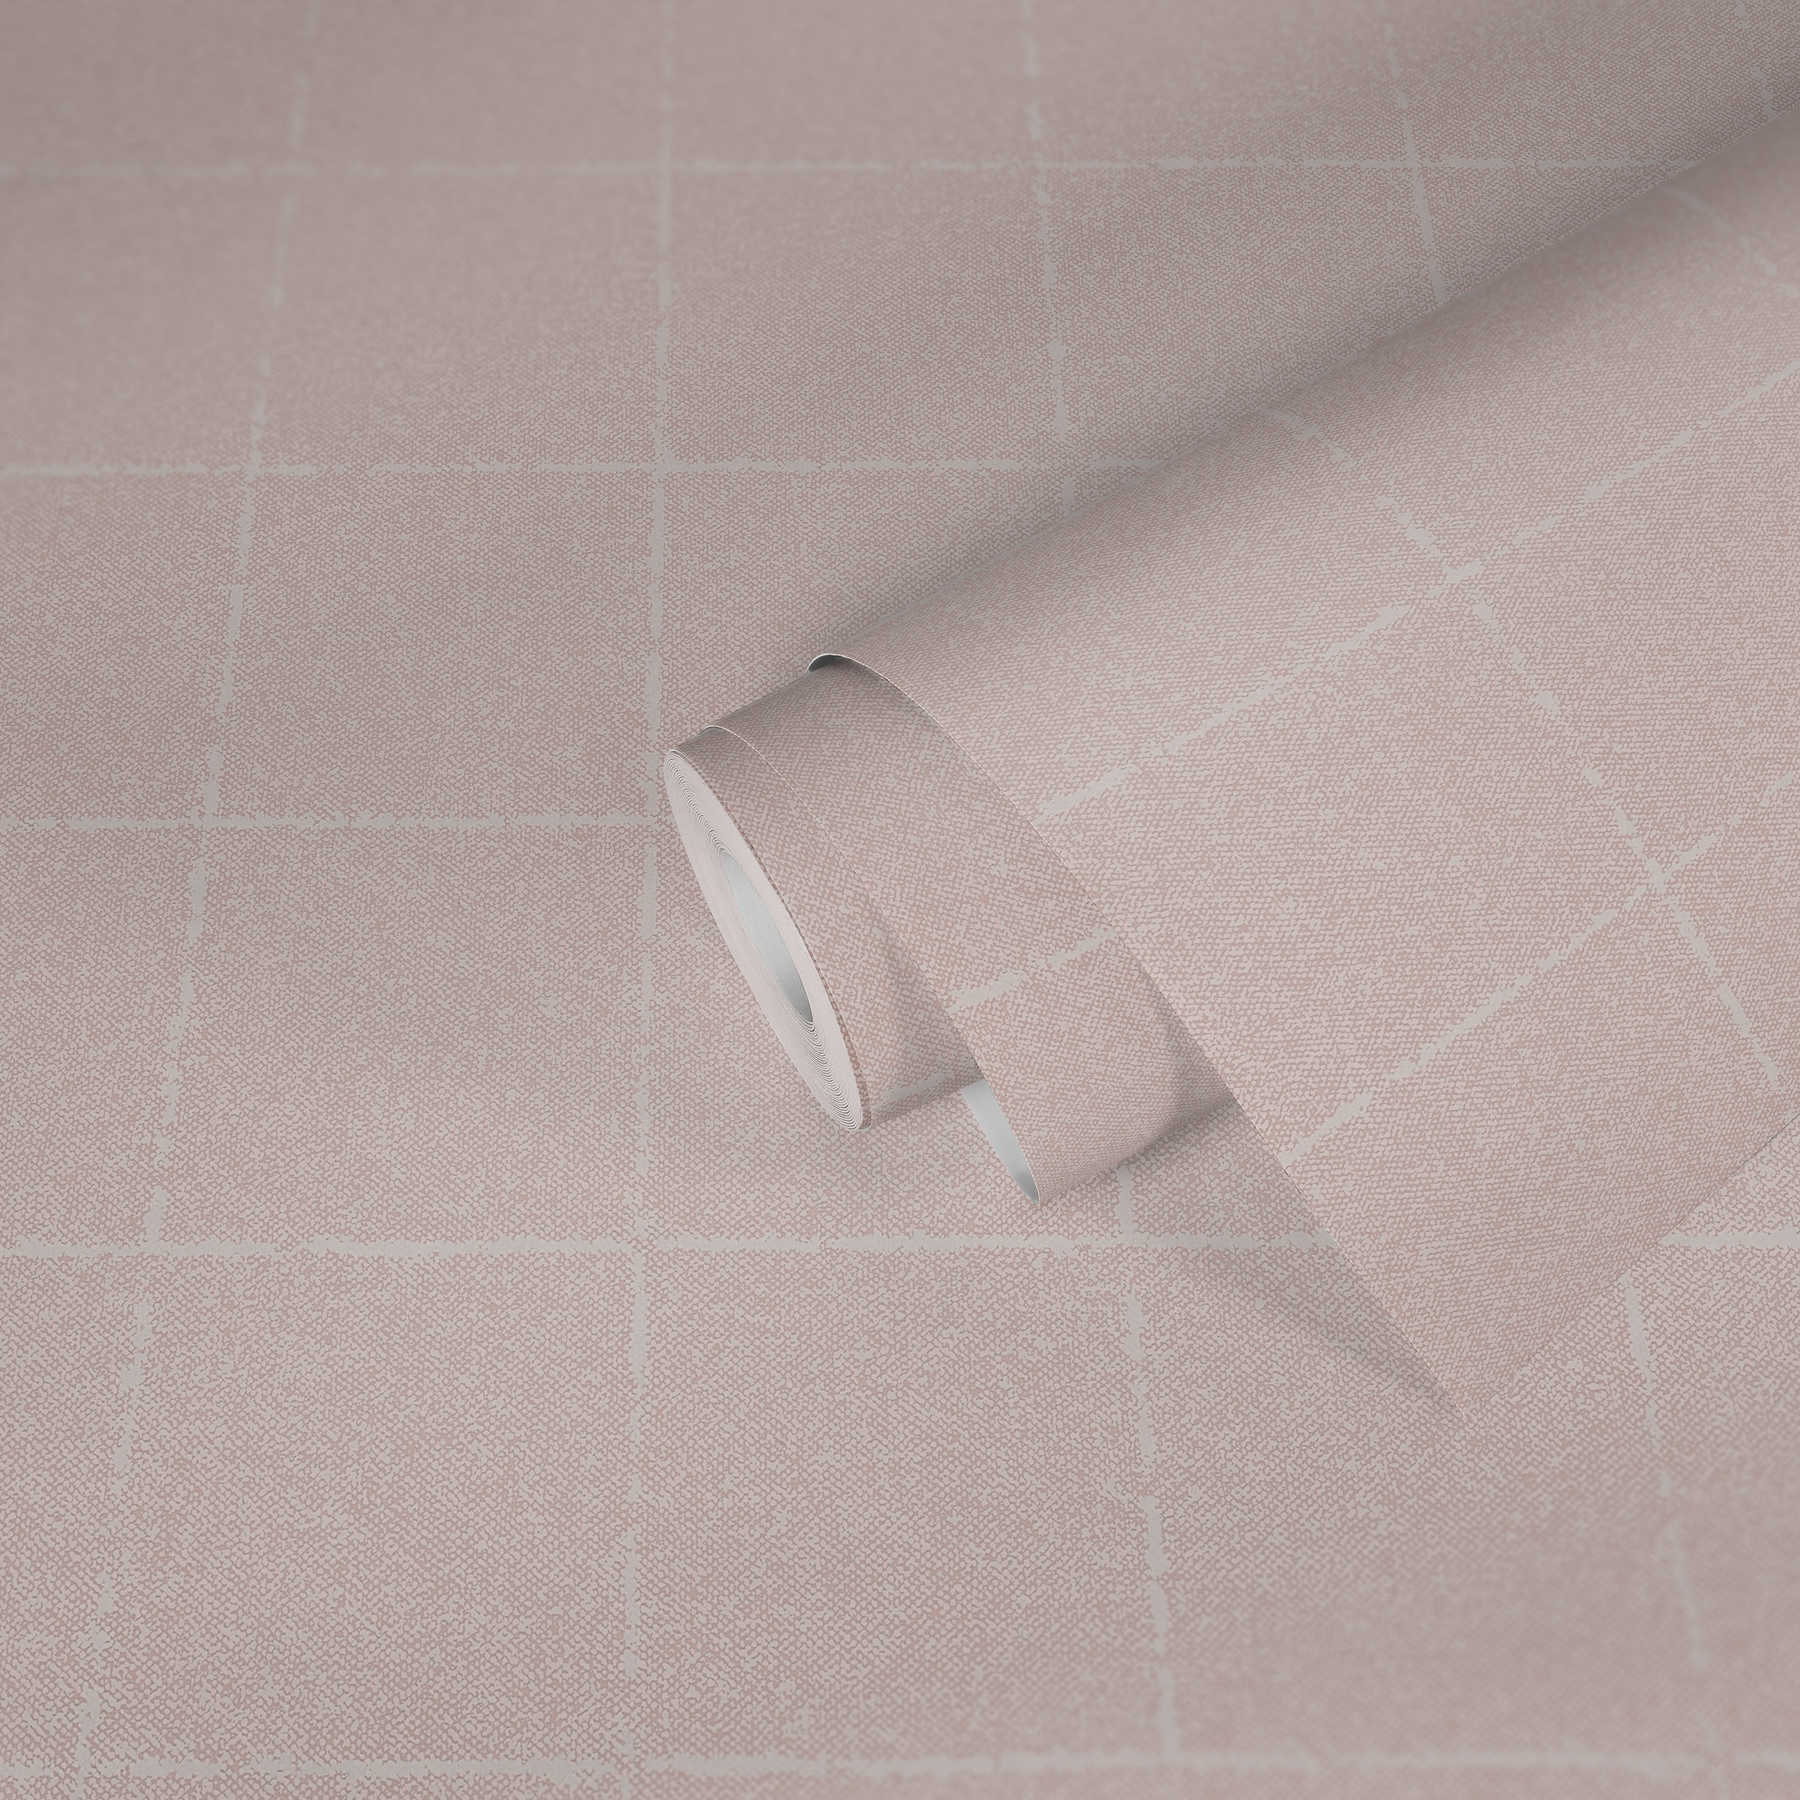             Papel pintado a cuadros en óptica textil, con textura - rosa, blanco, crema
        